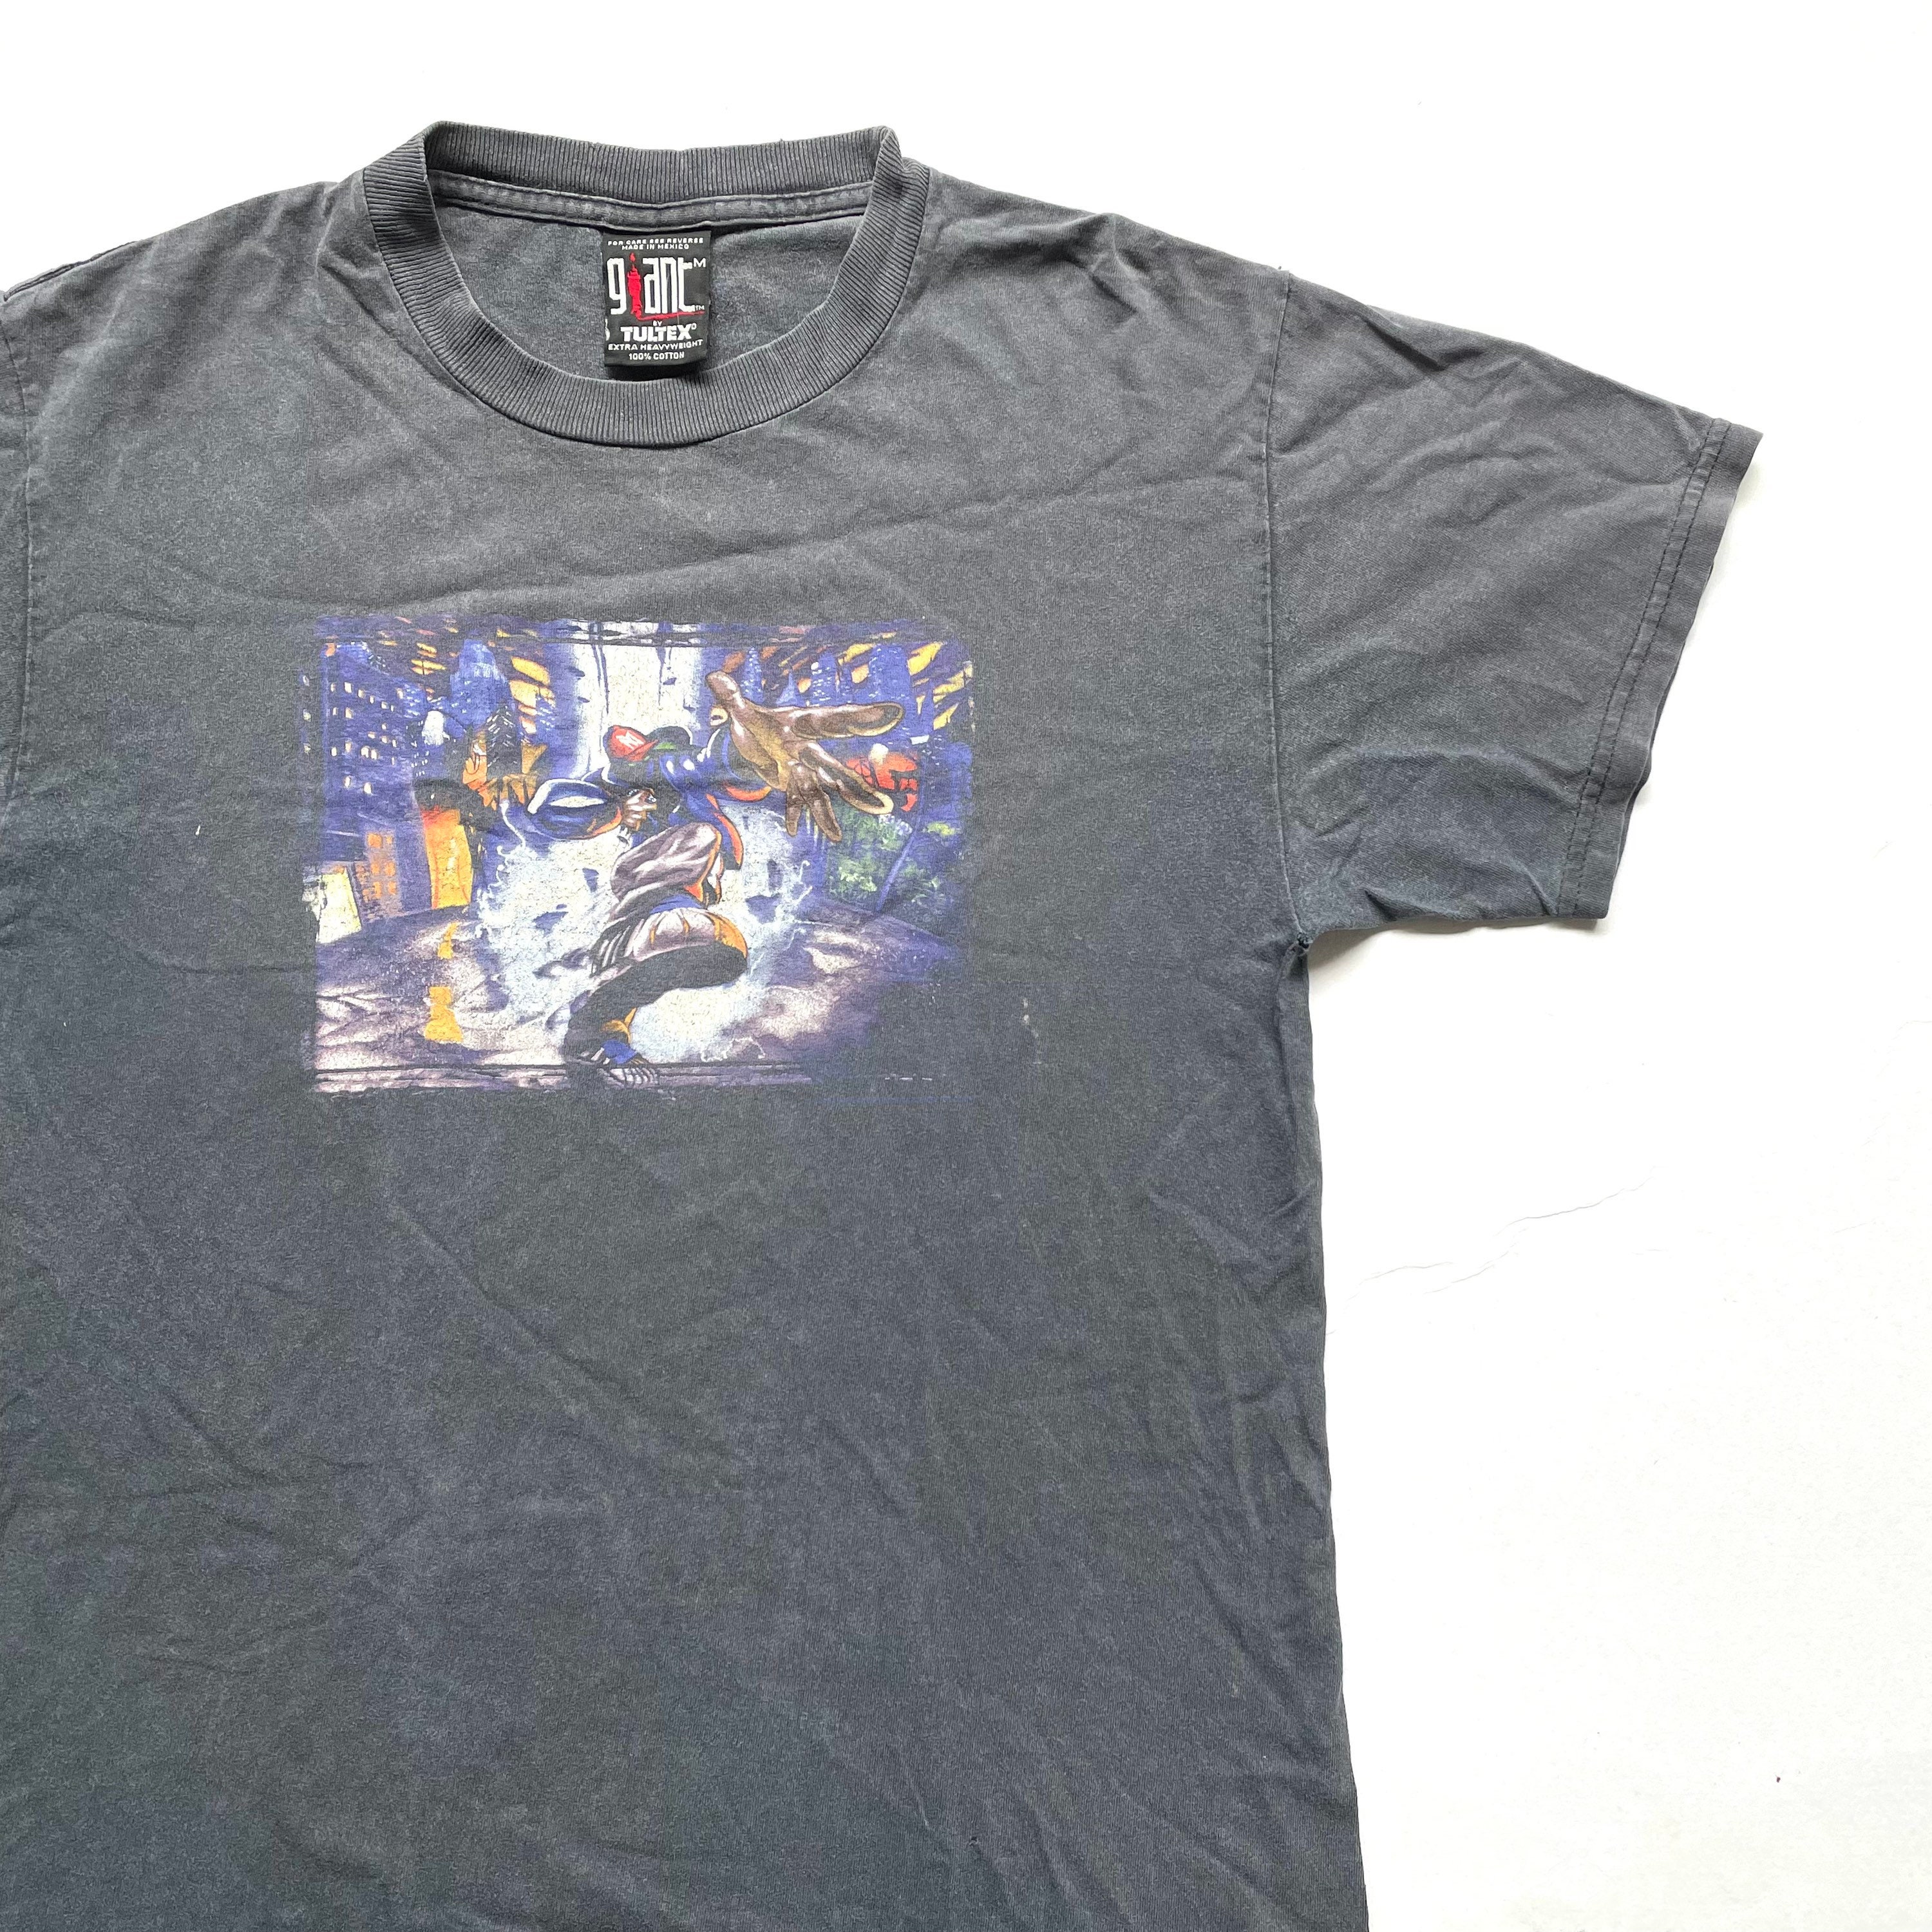 Vintage 1999 Limp Bizkit Significant Other Tour T Shirt Size M W